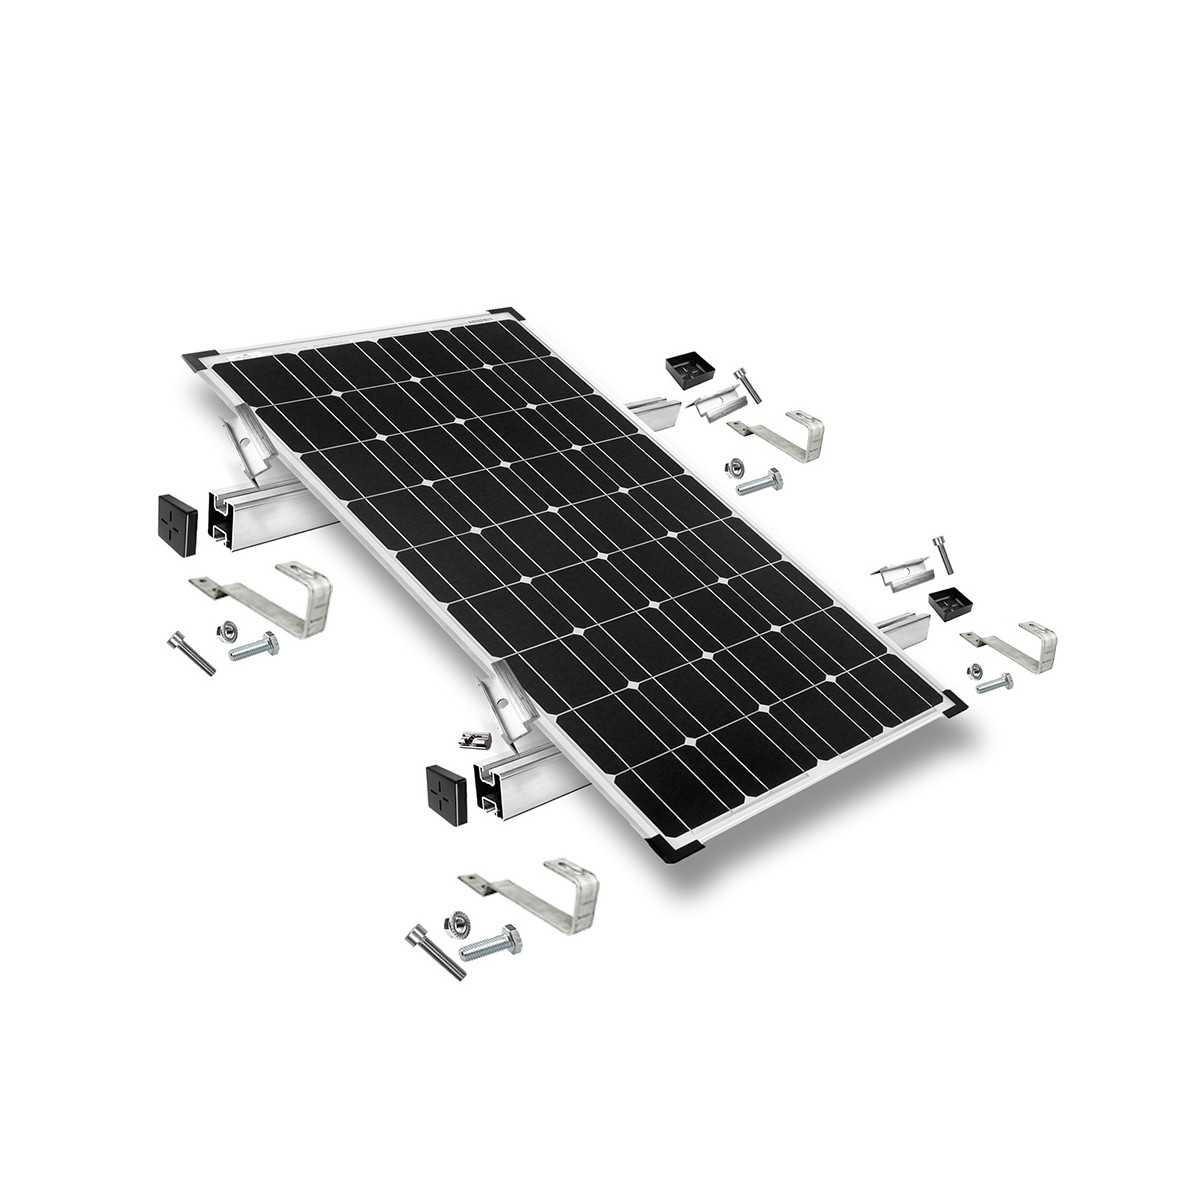 Kit di montaggio h30 con staffe fisse per tetto (per tegole) per tetto inclinato 1 pannello solare frame 30 mm